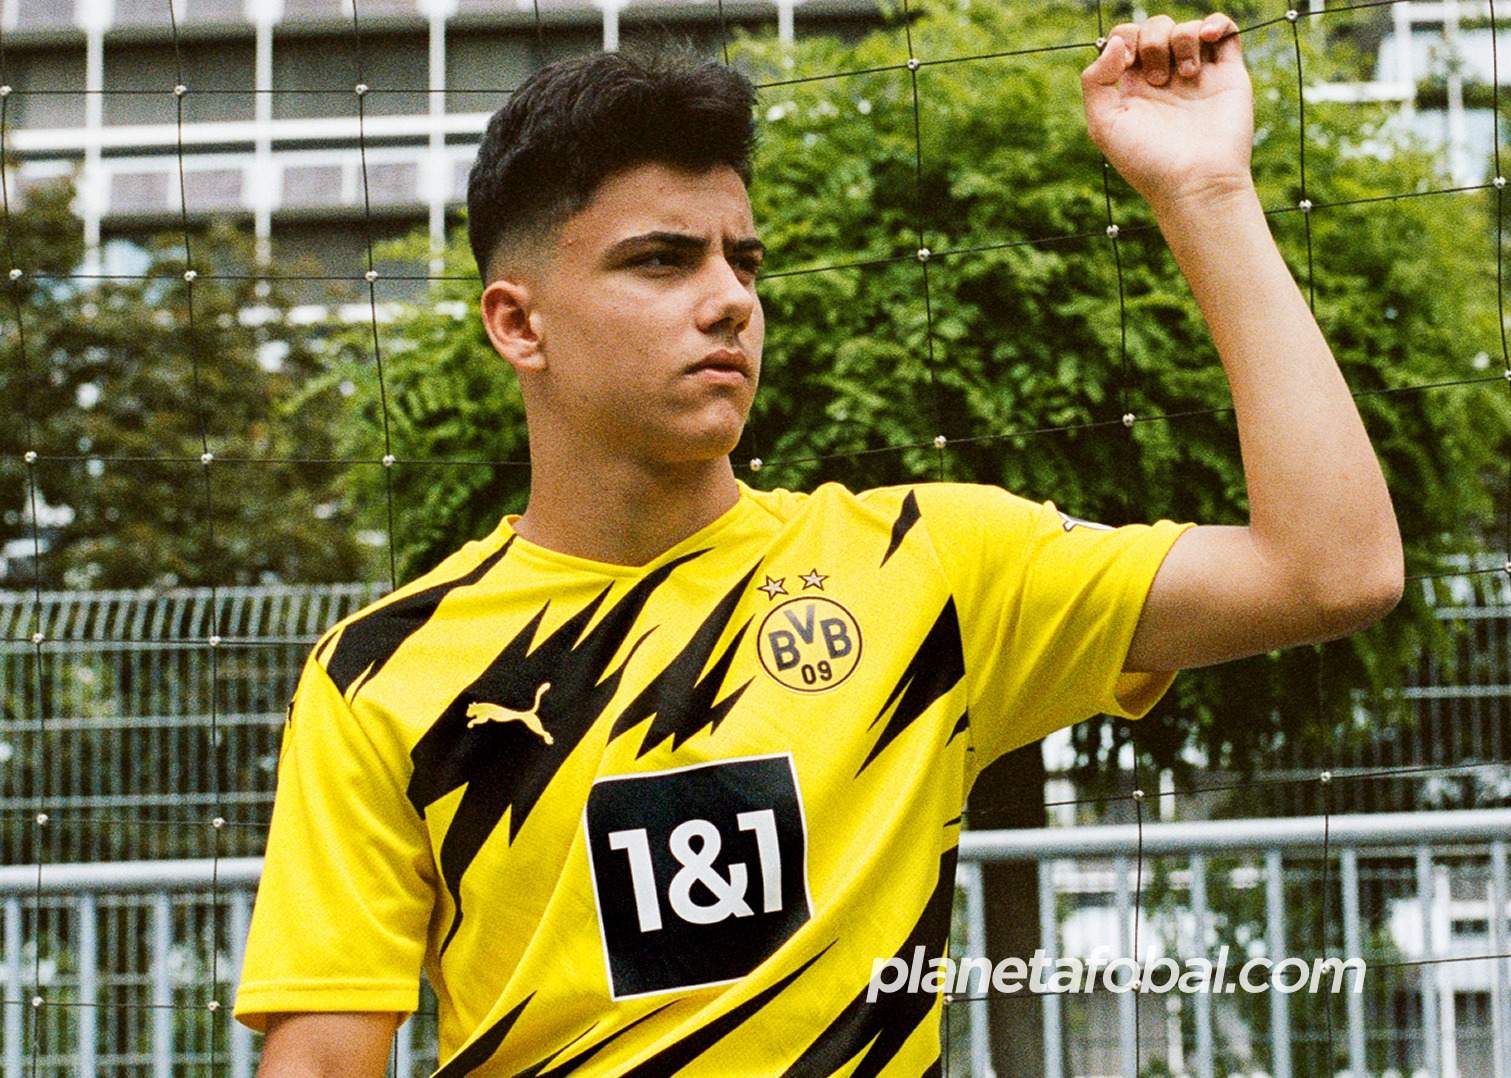 Camiseta titular del Borussia Dortmund 2020/2021 | Imagen Puma